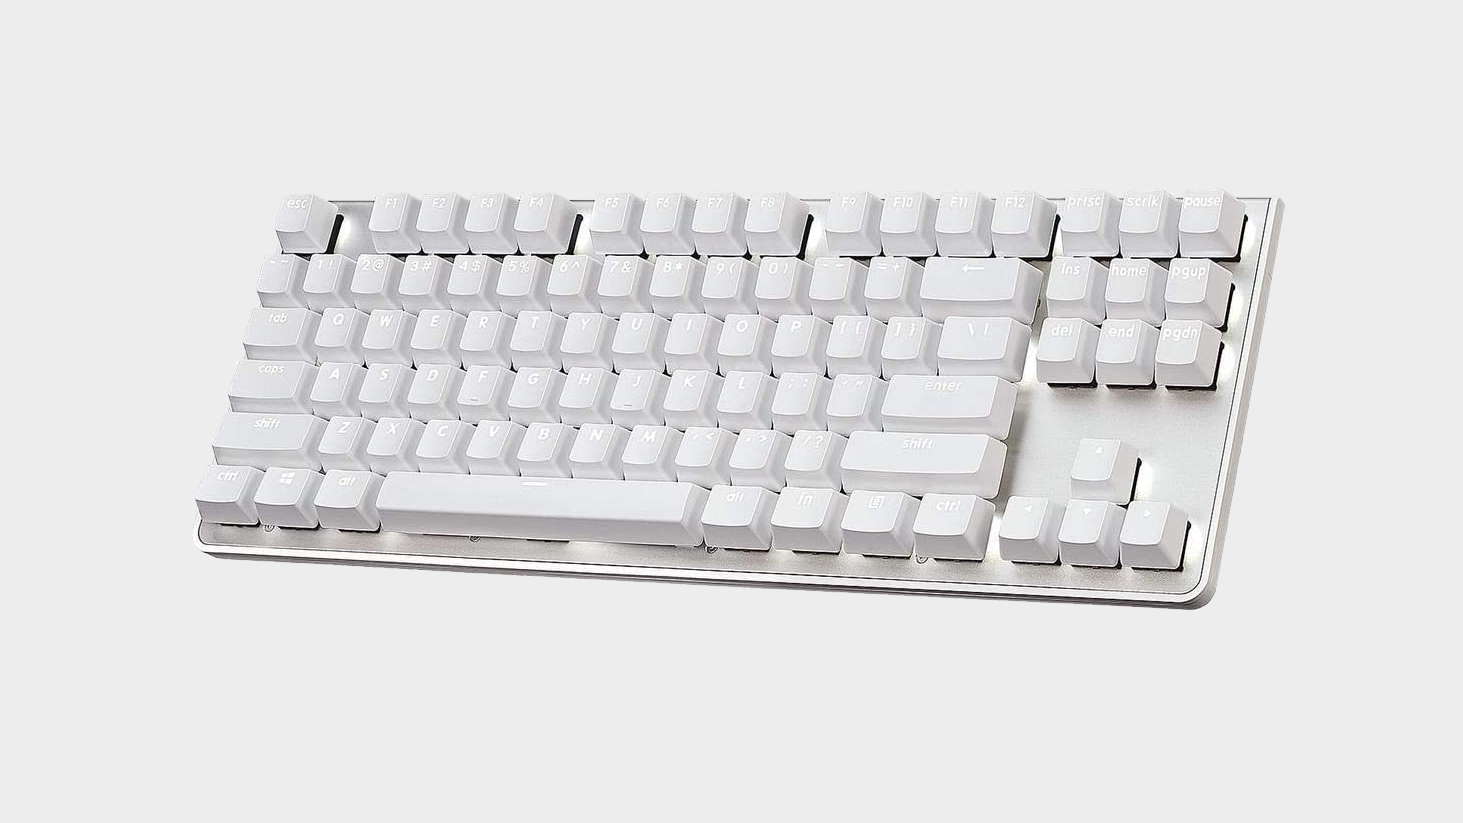 White G.Skill KM360 gaming keyboard on grey background